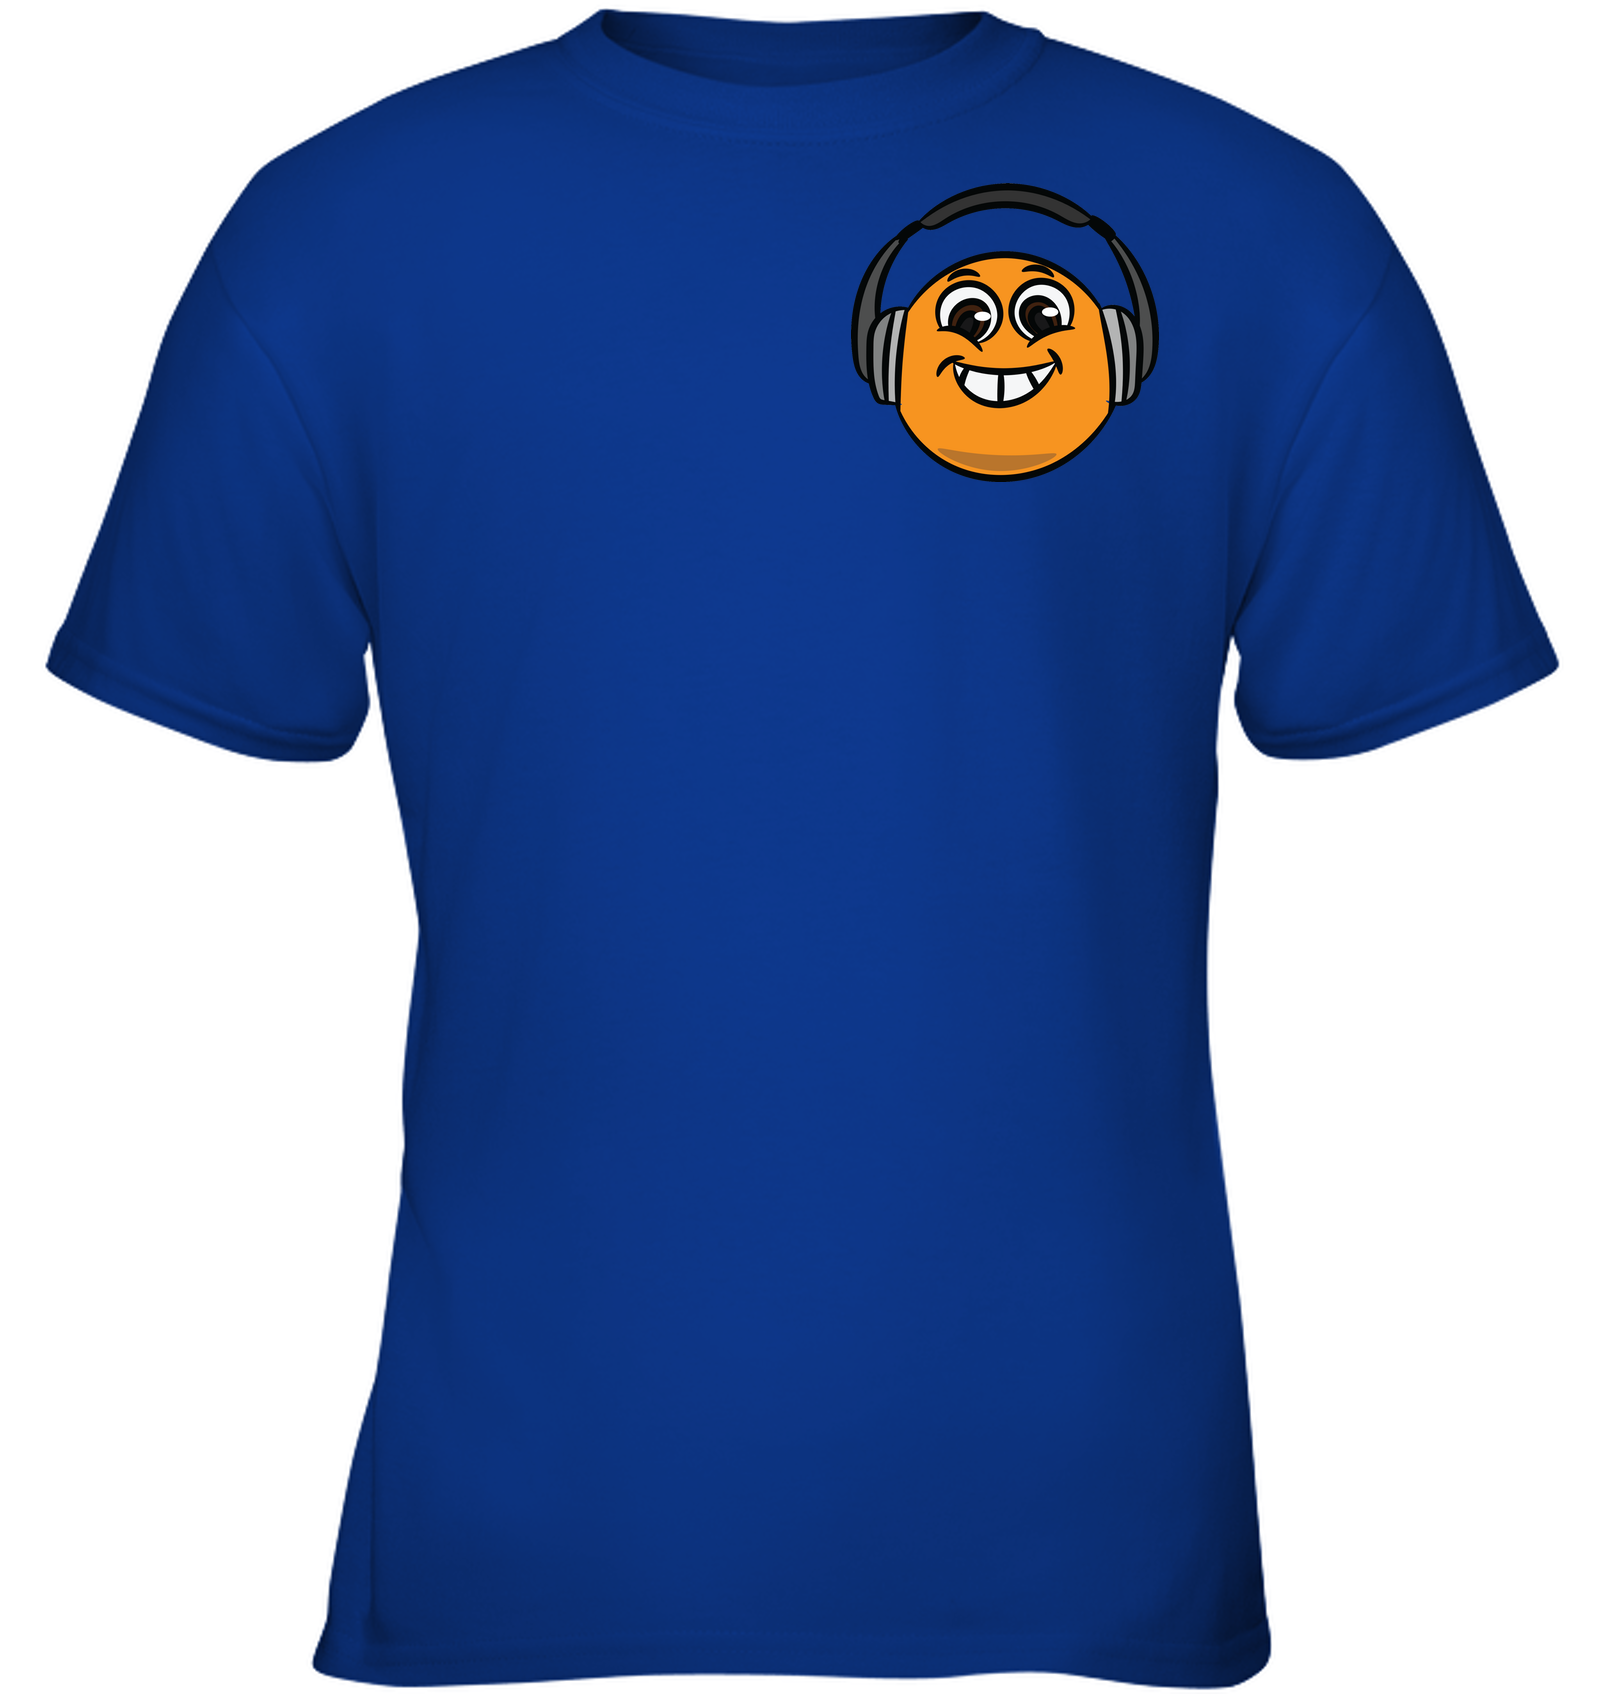 Eager Orange with Headphone (Pocket Size) - Gildan Youth Short Sleeve T-Shirt